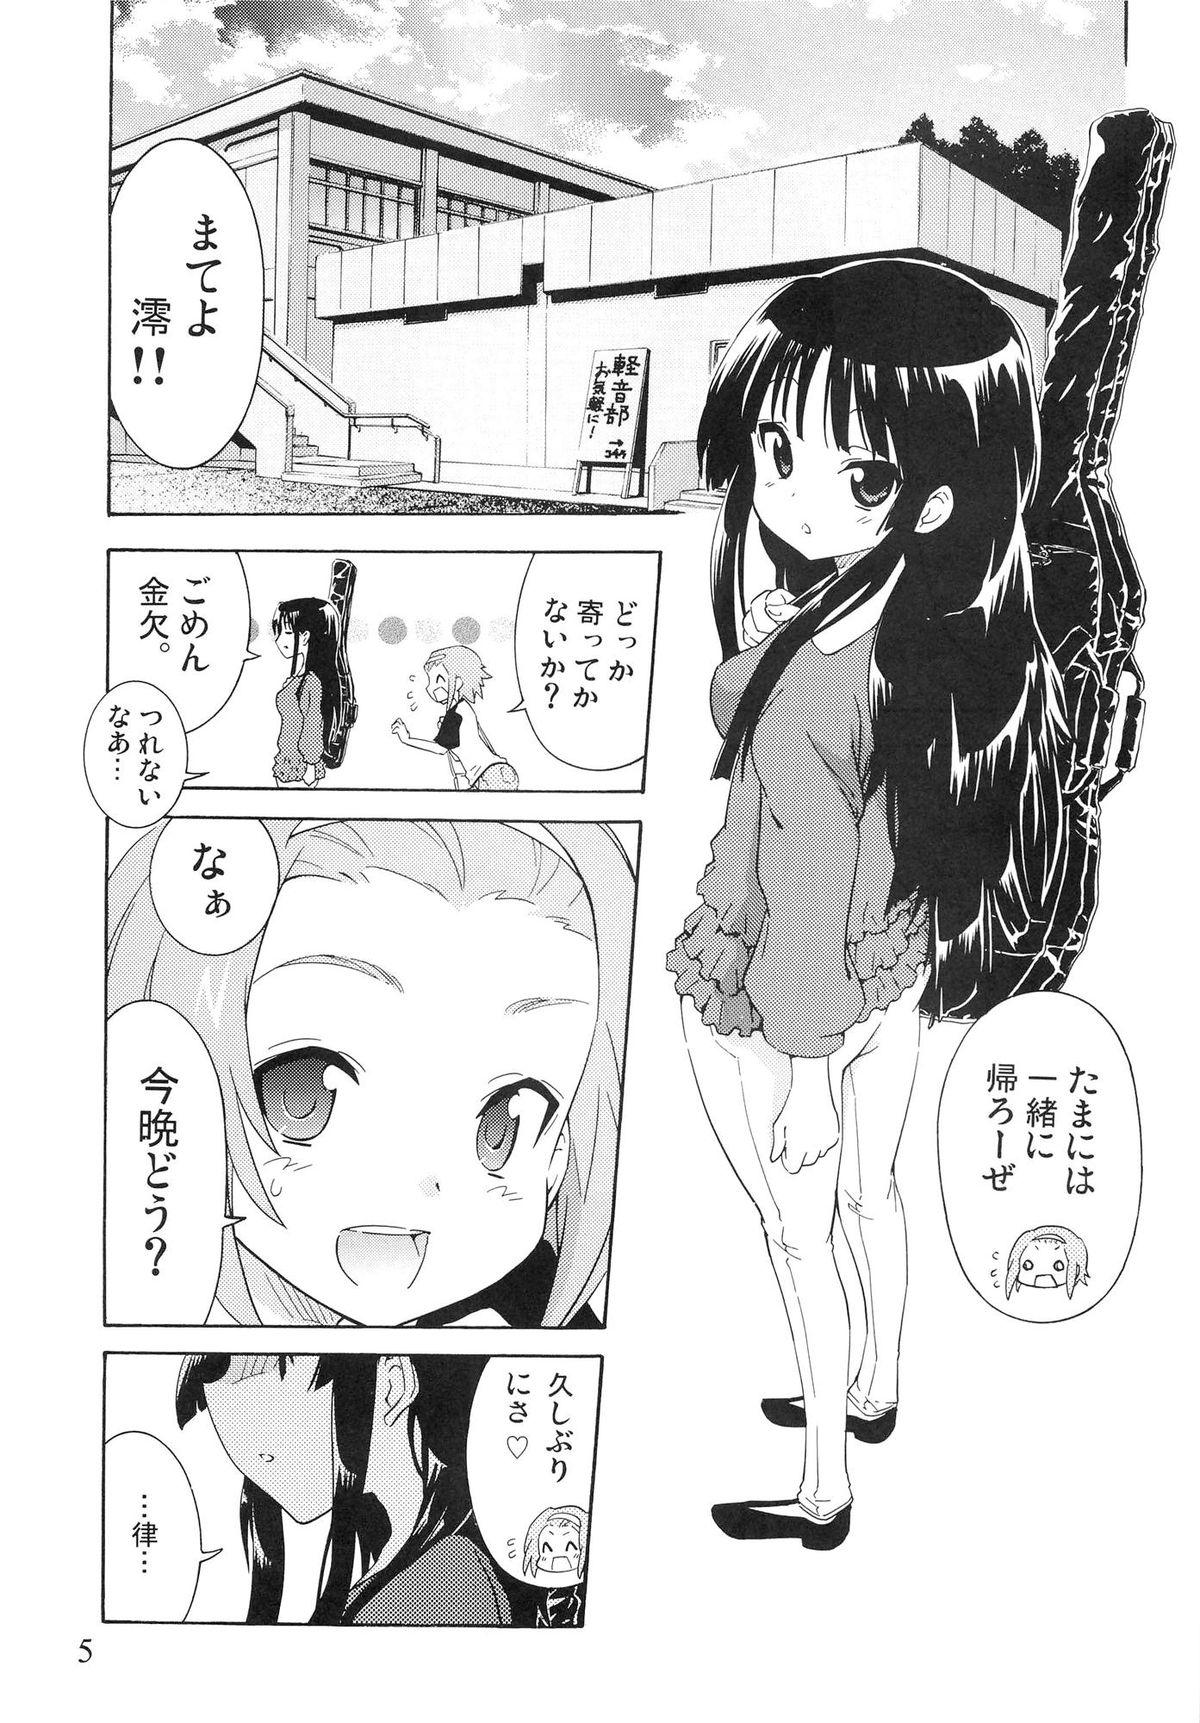 Bunda Grande [Umihan (Ootsuka Shirou)] YURI-ON! #2 "Kosokoso Mio-chan!" (K-ON!) - K on Aunt - Page 4